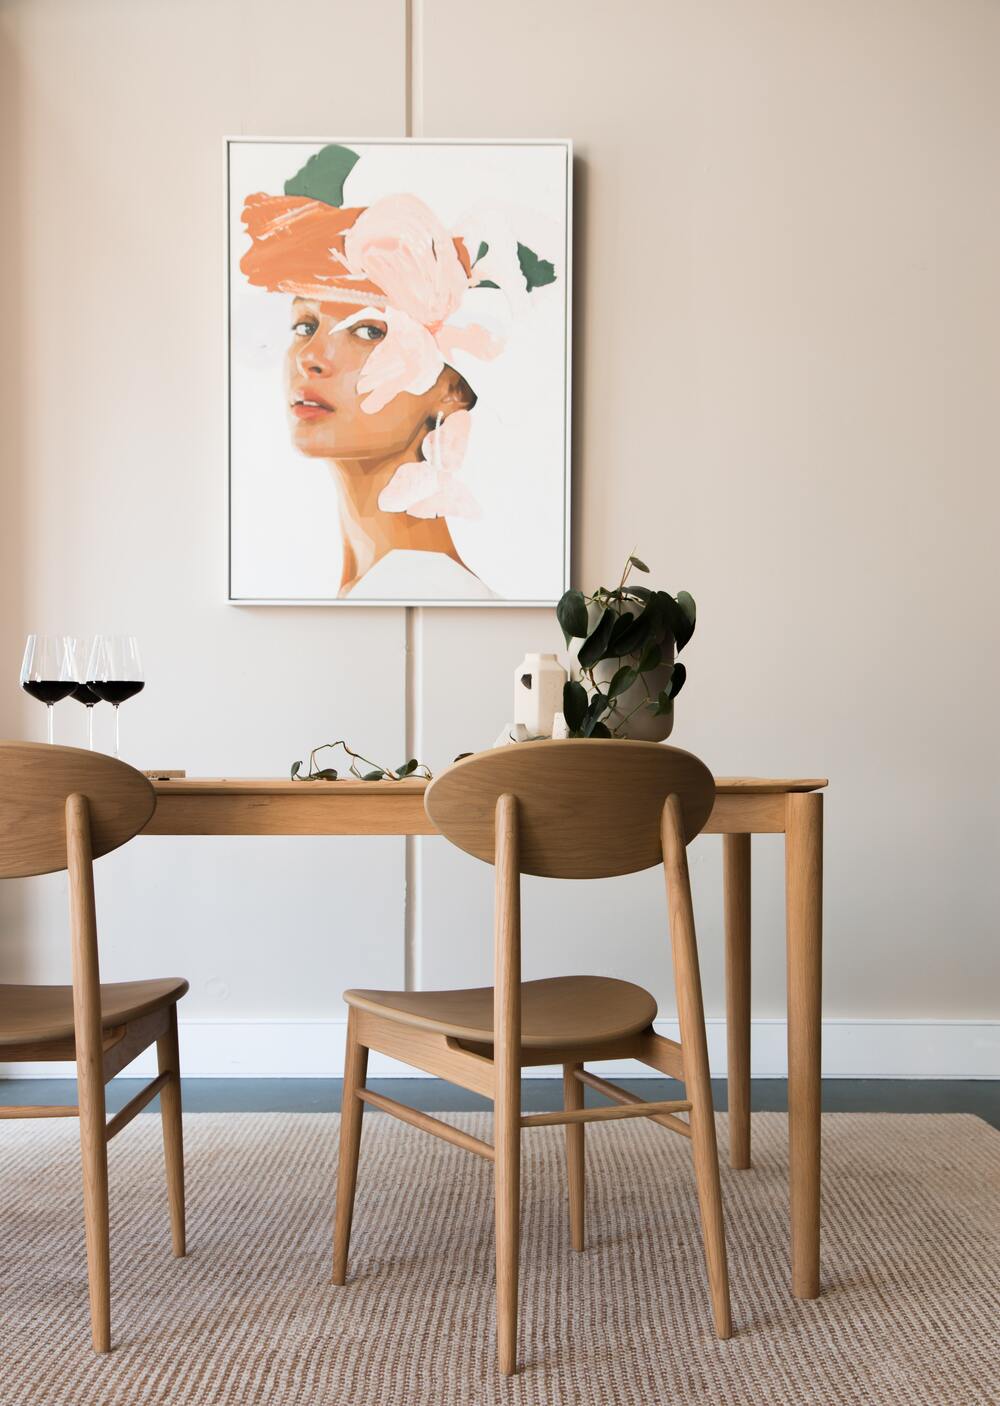 Holztisch mit Weingläsern und Philodendron auf dem Tisch, davor zwei Holzstühle und dahinter an der Wand ein Artprint eines Frauenkopfs